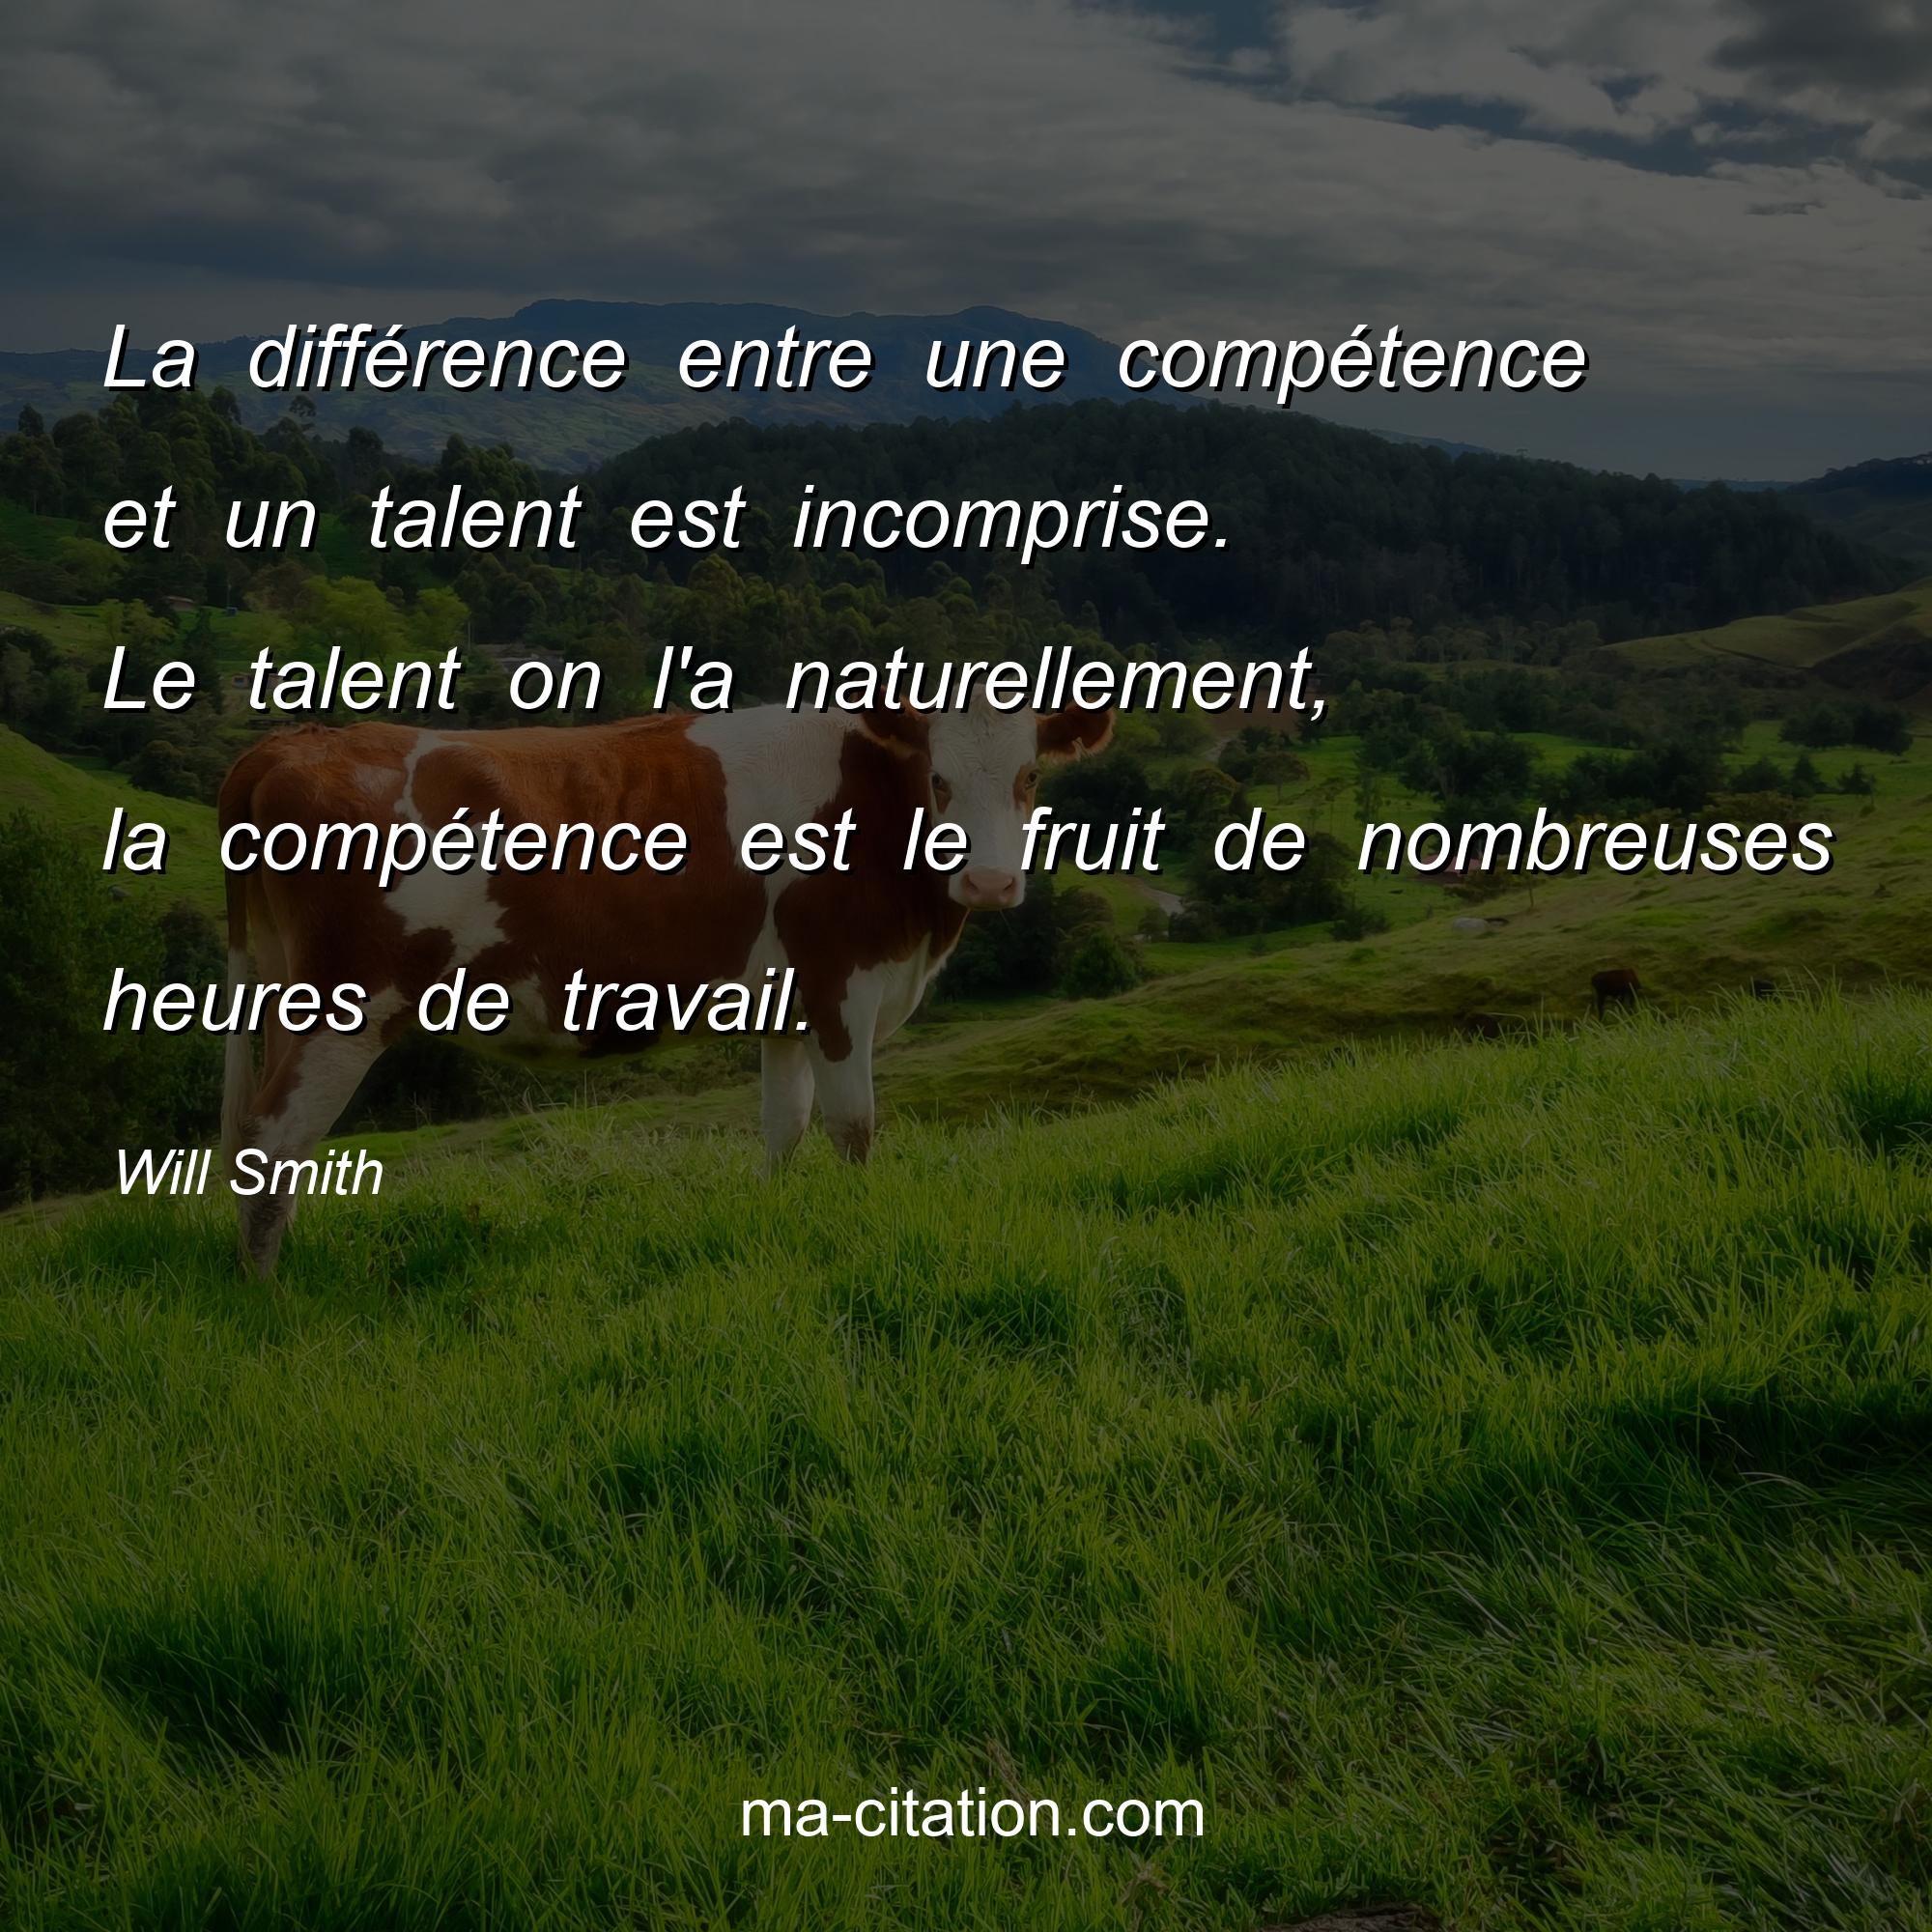 Will Smith : La différence entre une compétence et un talent est incomprise. Le talent on l'a naturellement, la compétence est le fruit de nombreuses heures de travail.